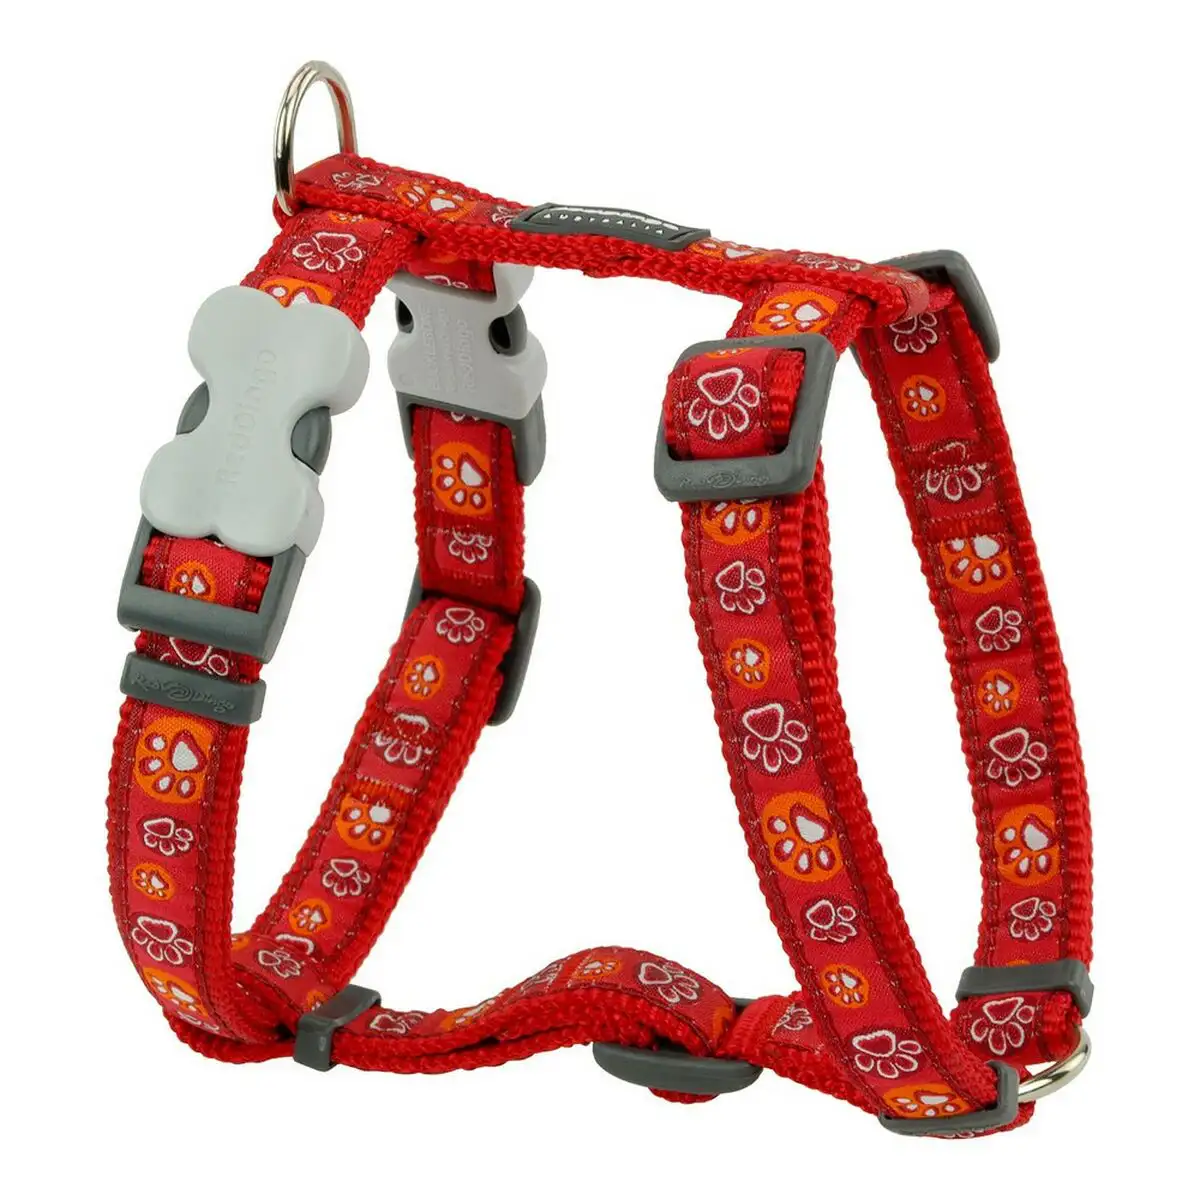 Harnais pour chien red dingo style rouge empreinte des animaux 37 61 cm_3100. DIAYTAR SENEGAL - Là où Choisir est une Affirmation de Style. Naviguez à travers notre boutique en ligne et choisissez des produits qui vous distinguent et vous valorisent.